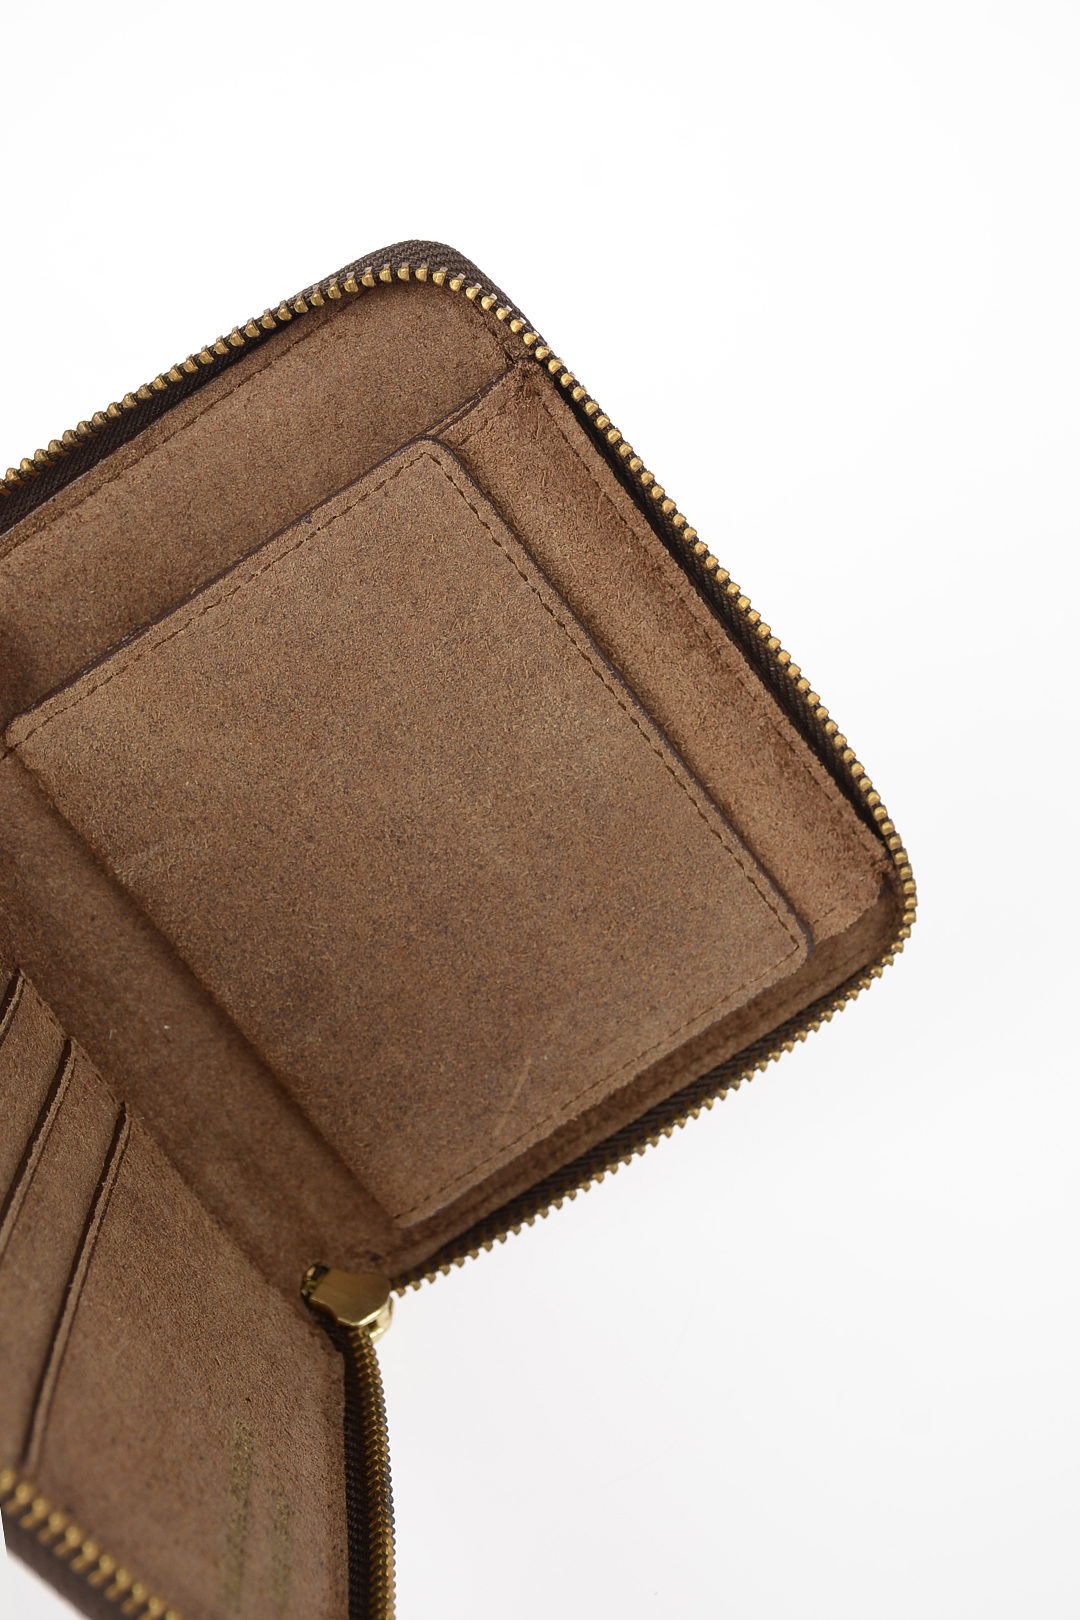 Comme Des Garçons Leather Vintage Effect Wallet women - Glamood Outlet